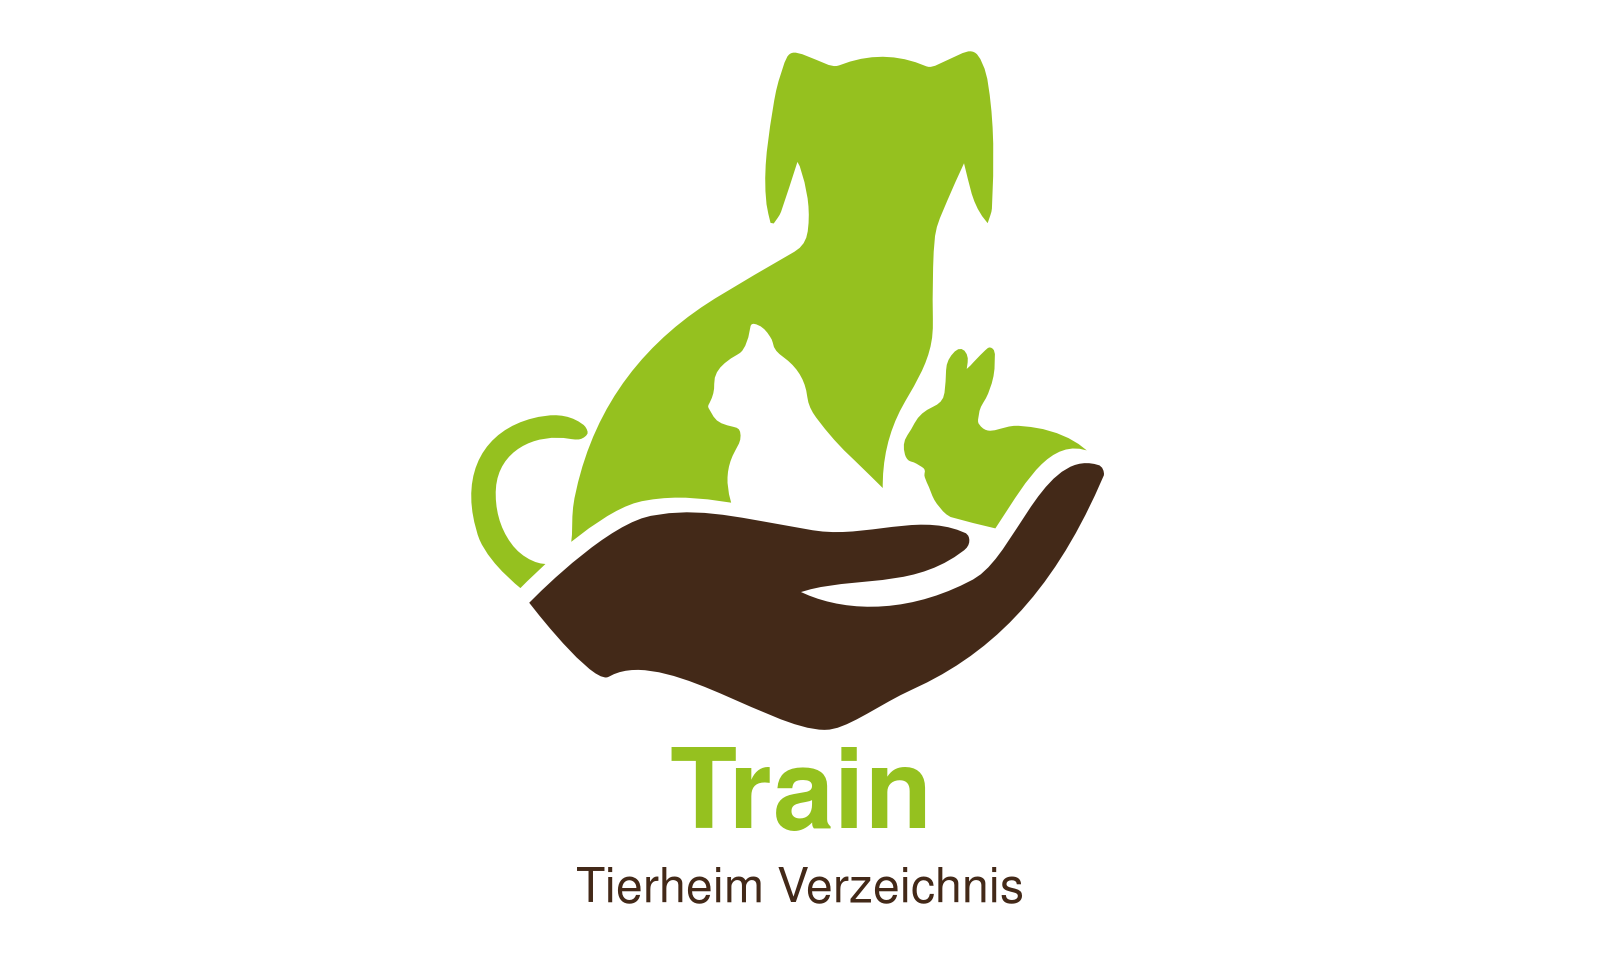 Tierheim Train